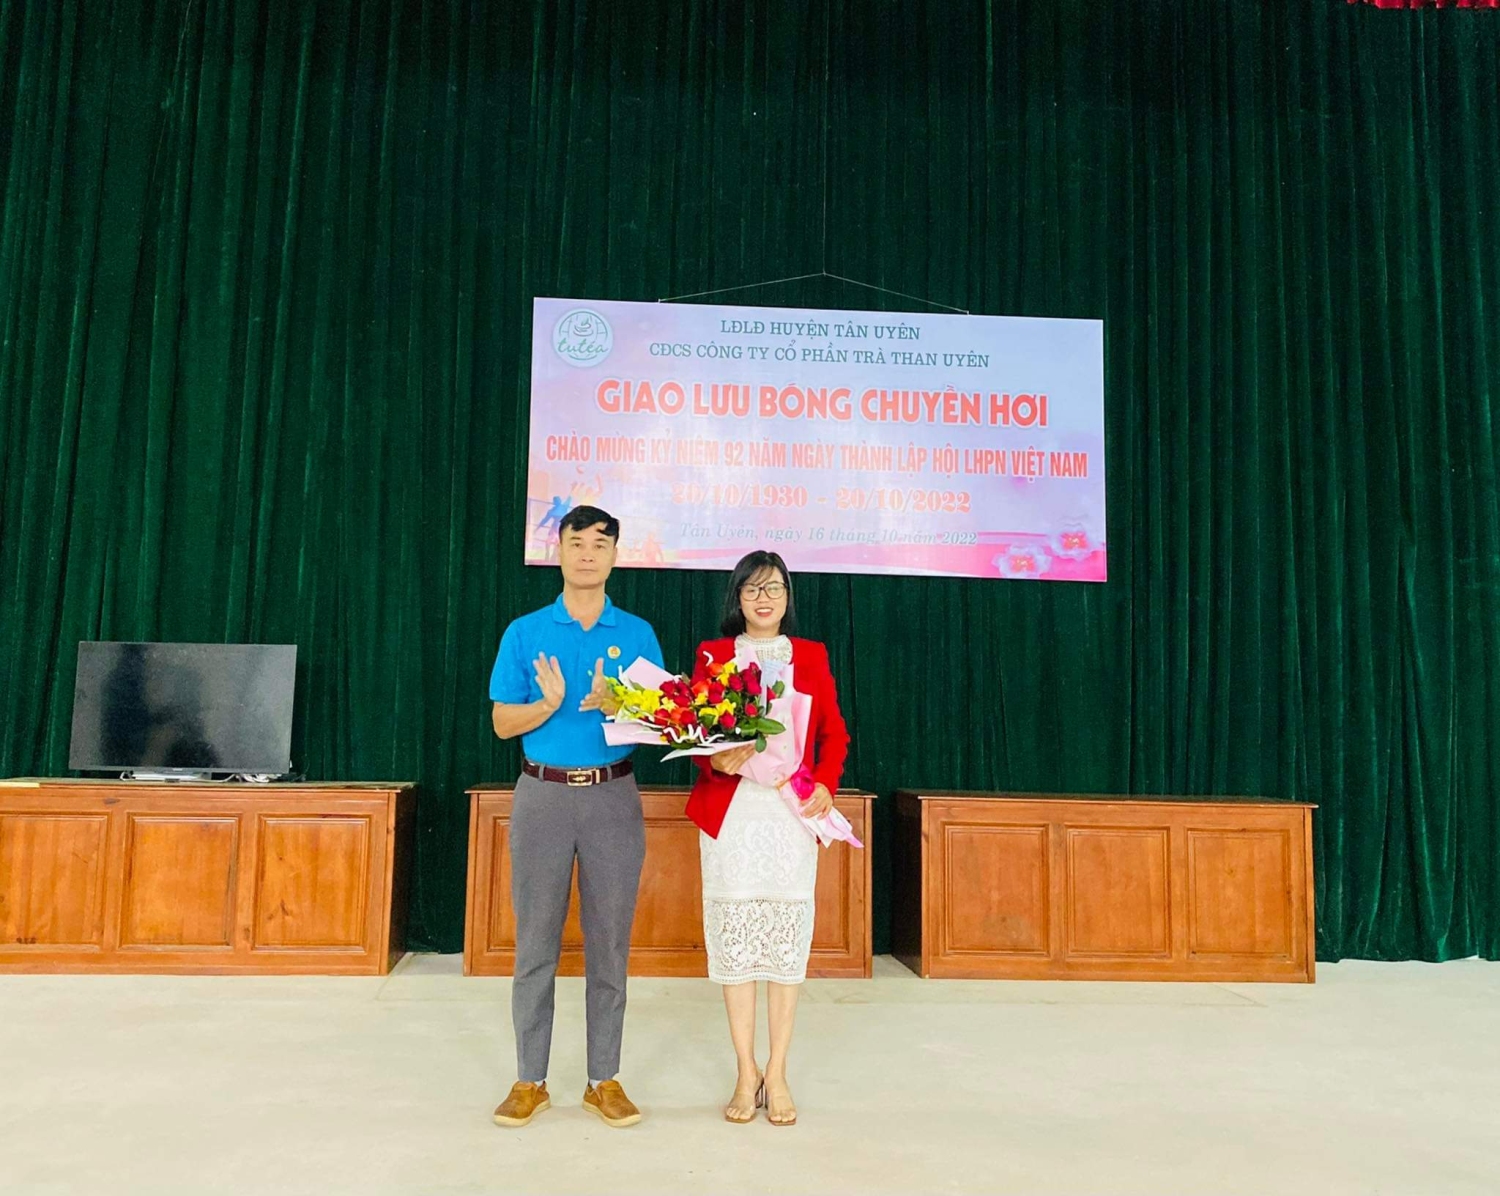 Đc Vũ Văn Bính, PCT LĐLĐ huyện tặng hoa và quà cho CĐCS Công ty Cổ phần trà